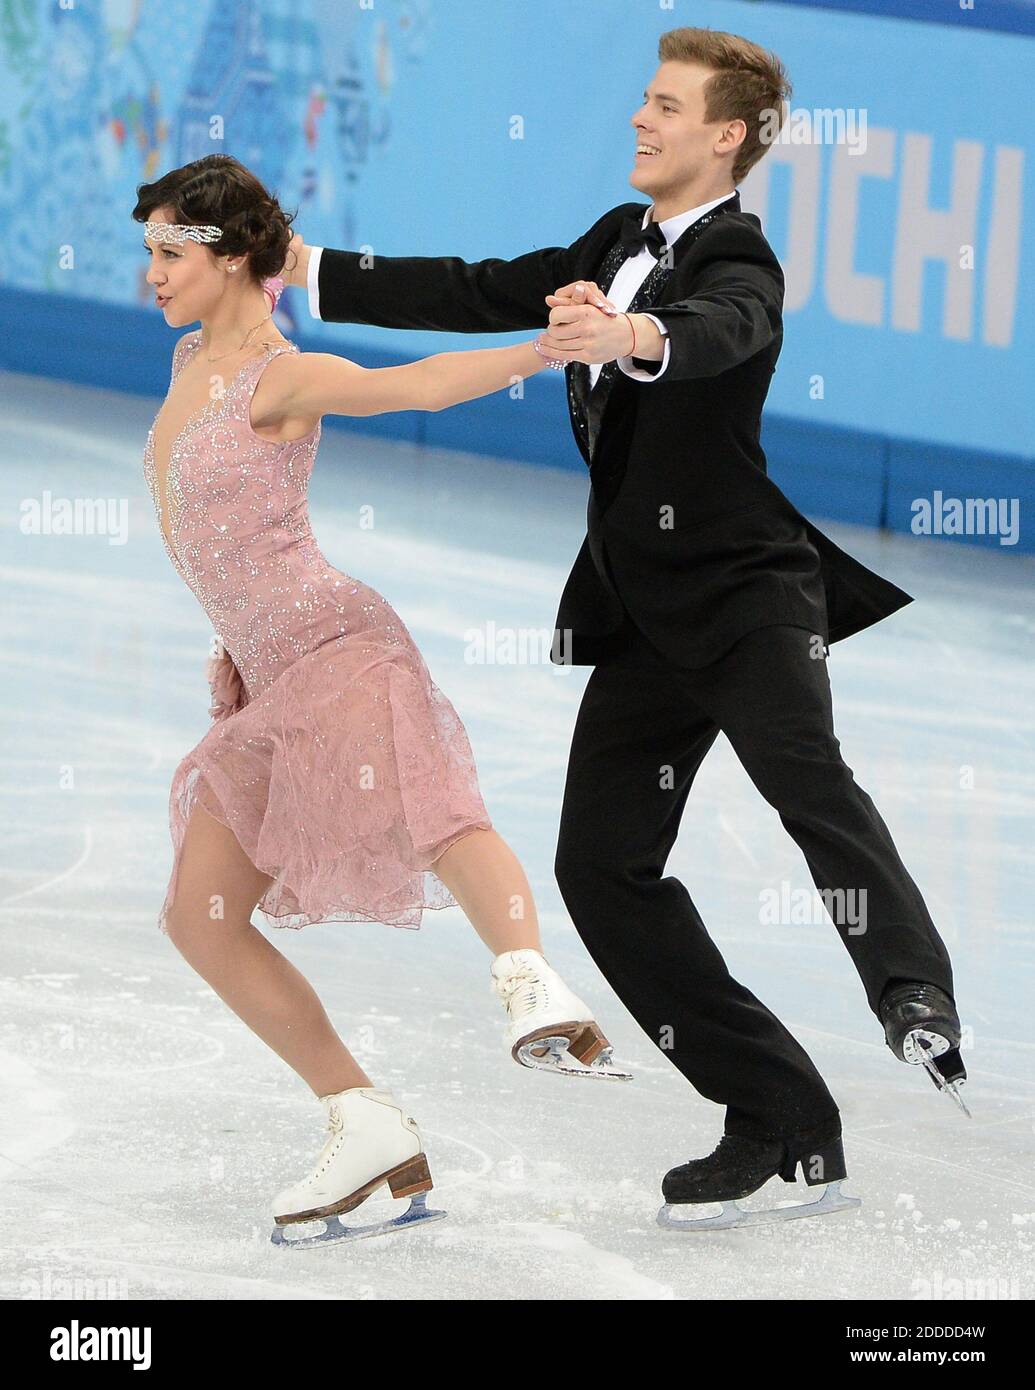 NO HAY PELÍCULA, NO HAY VÍDEO, NO hay televisión, NO HAY DOCUMENTAL - Elena  Ilinykh y Nikita Katsalapov de Rusia realizan su breve baile durante la  competición de patinaje sobre hielo en